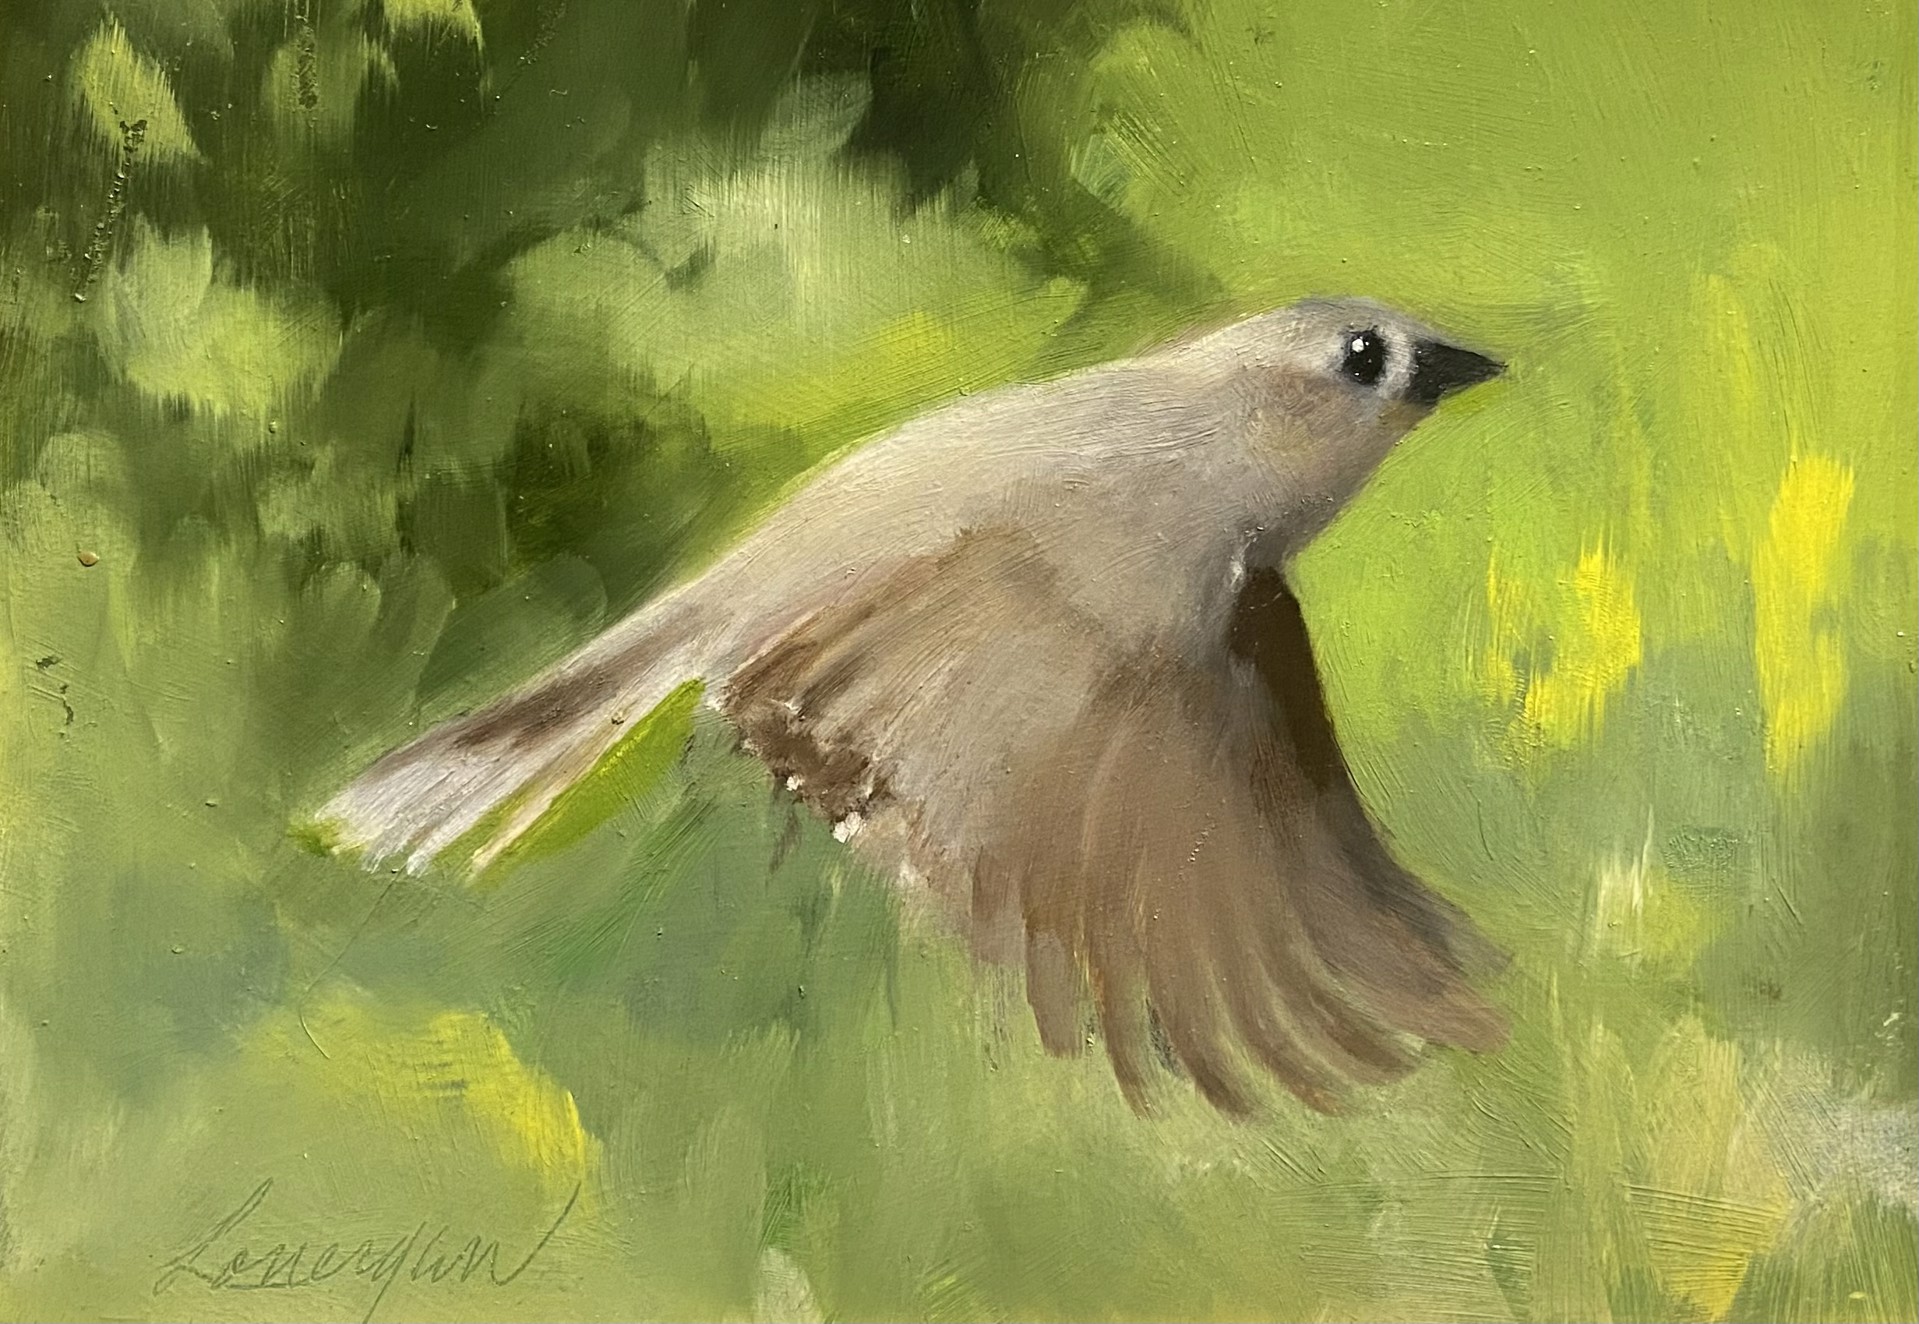 Bird in Flight by John Lonergan